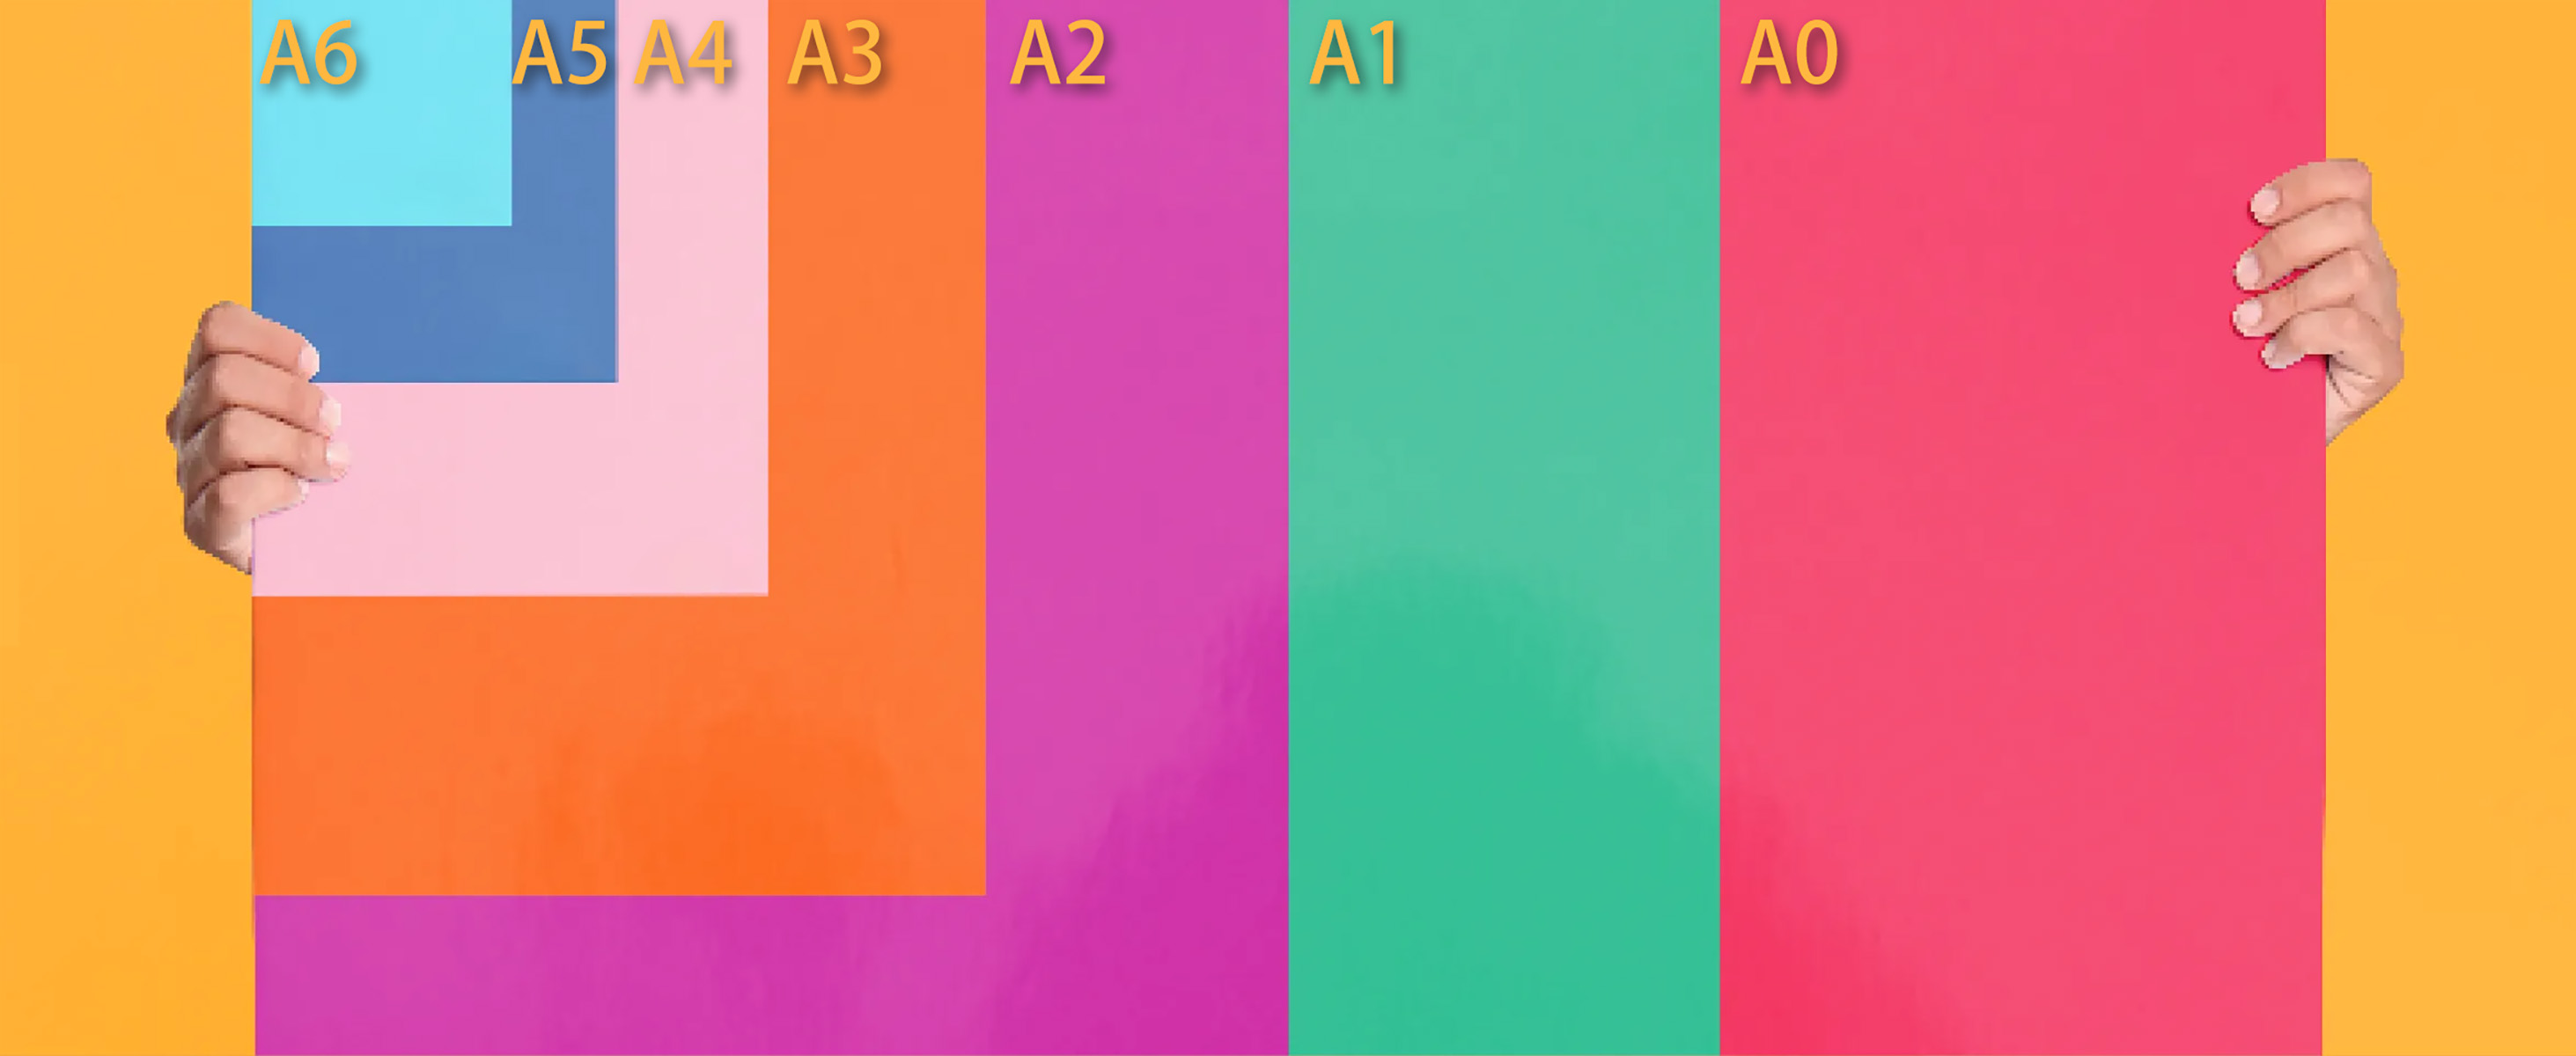 a6 and a5 and a4 and a3 and a2 and a1 and a0 paper sizes